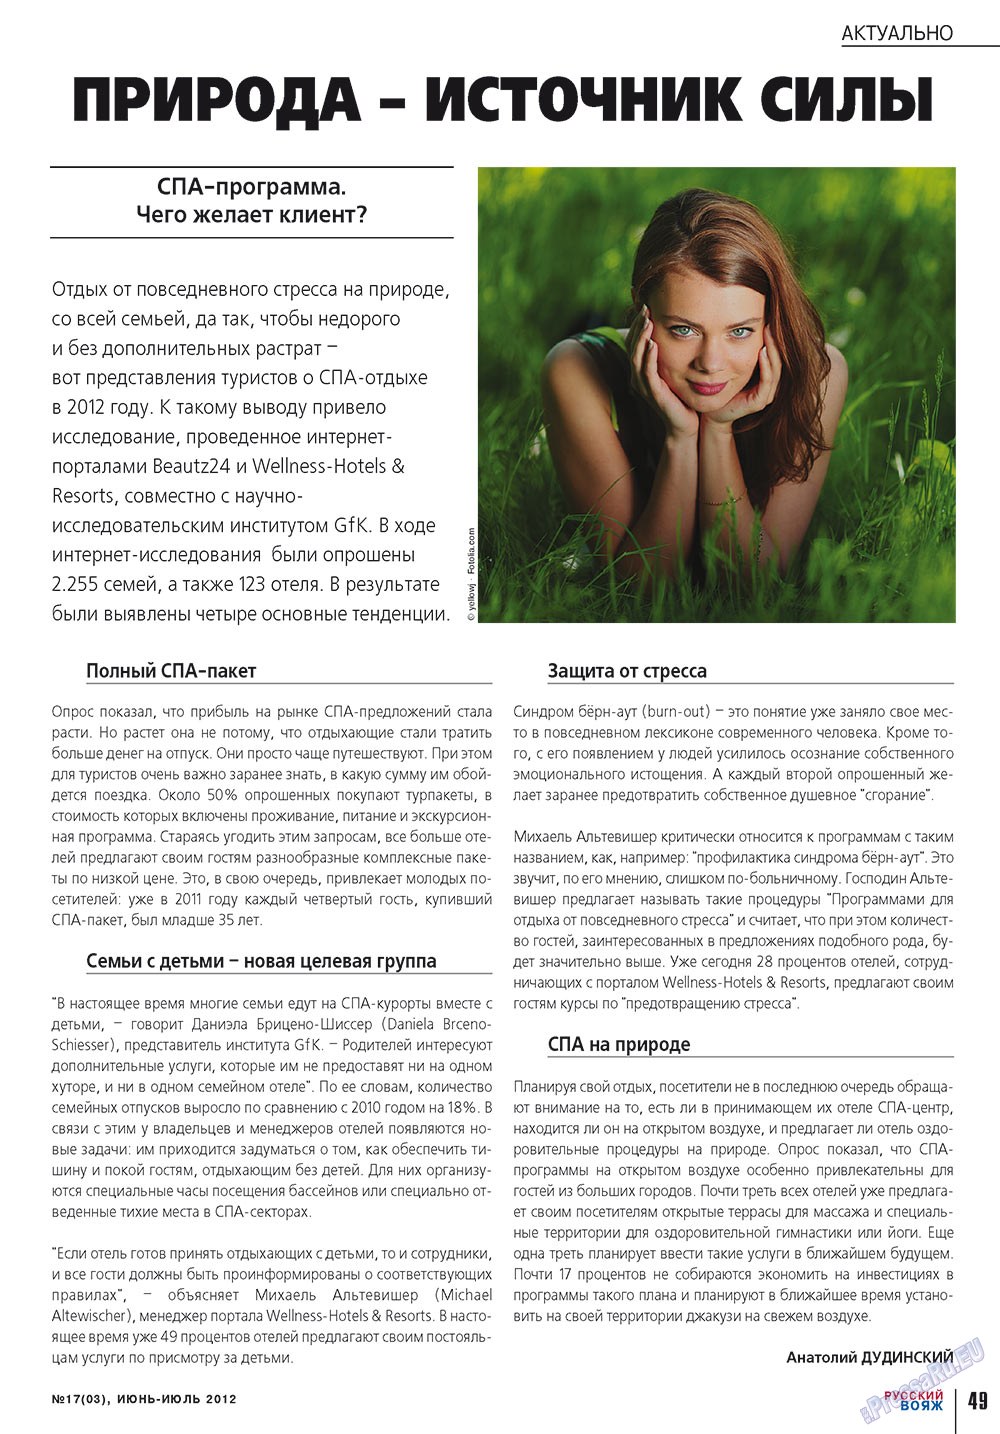 Русский вояж, журнал. 2012 №17 стр.49